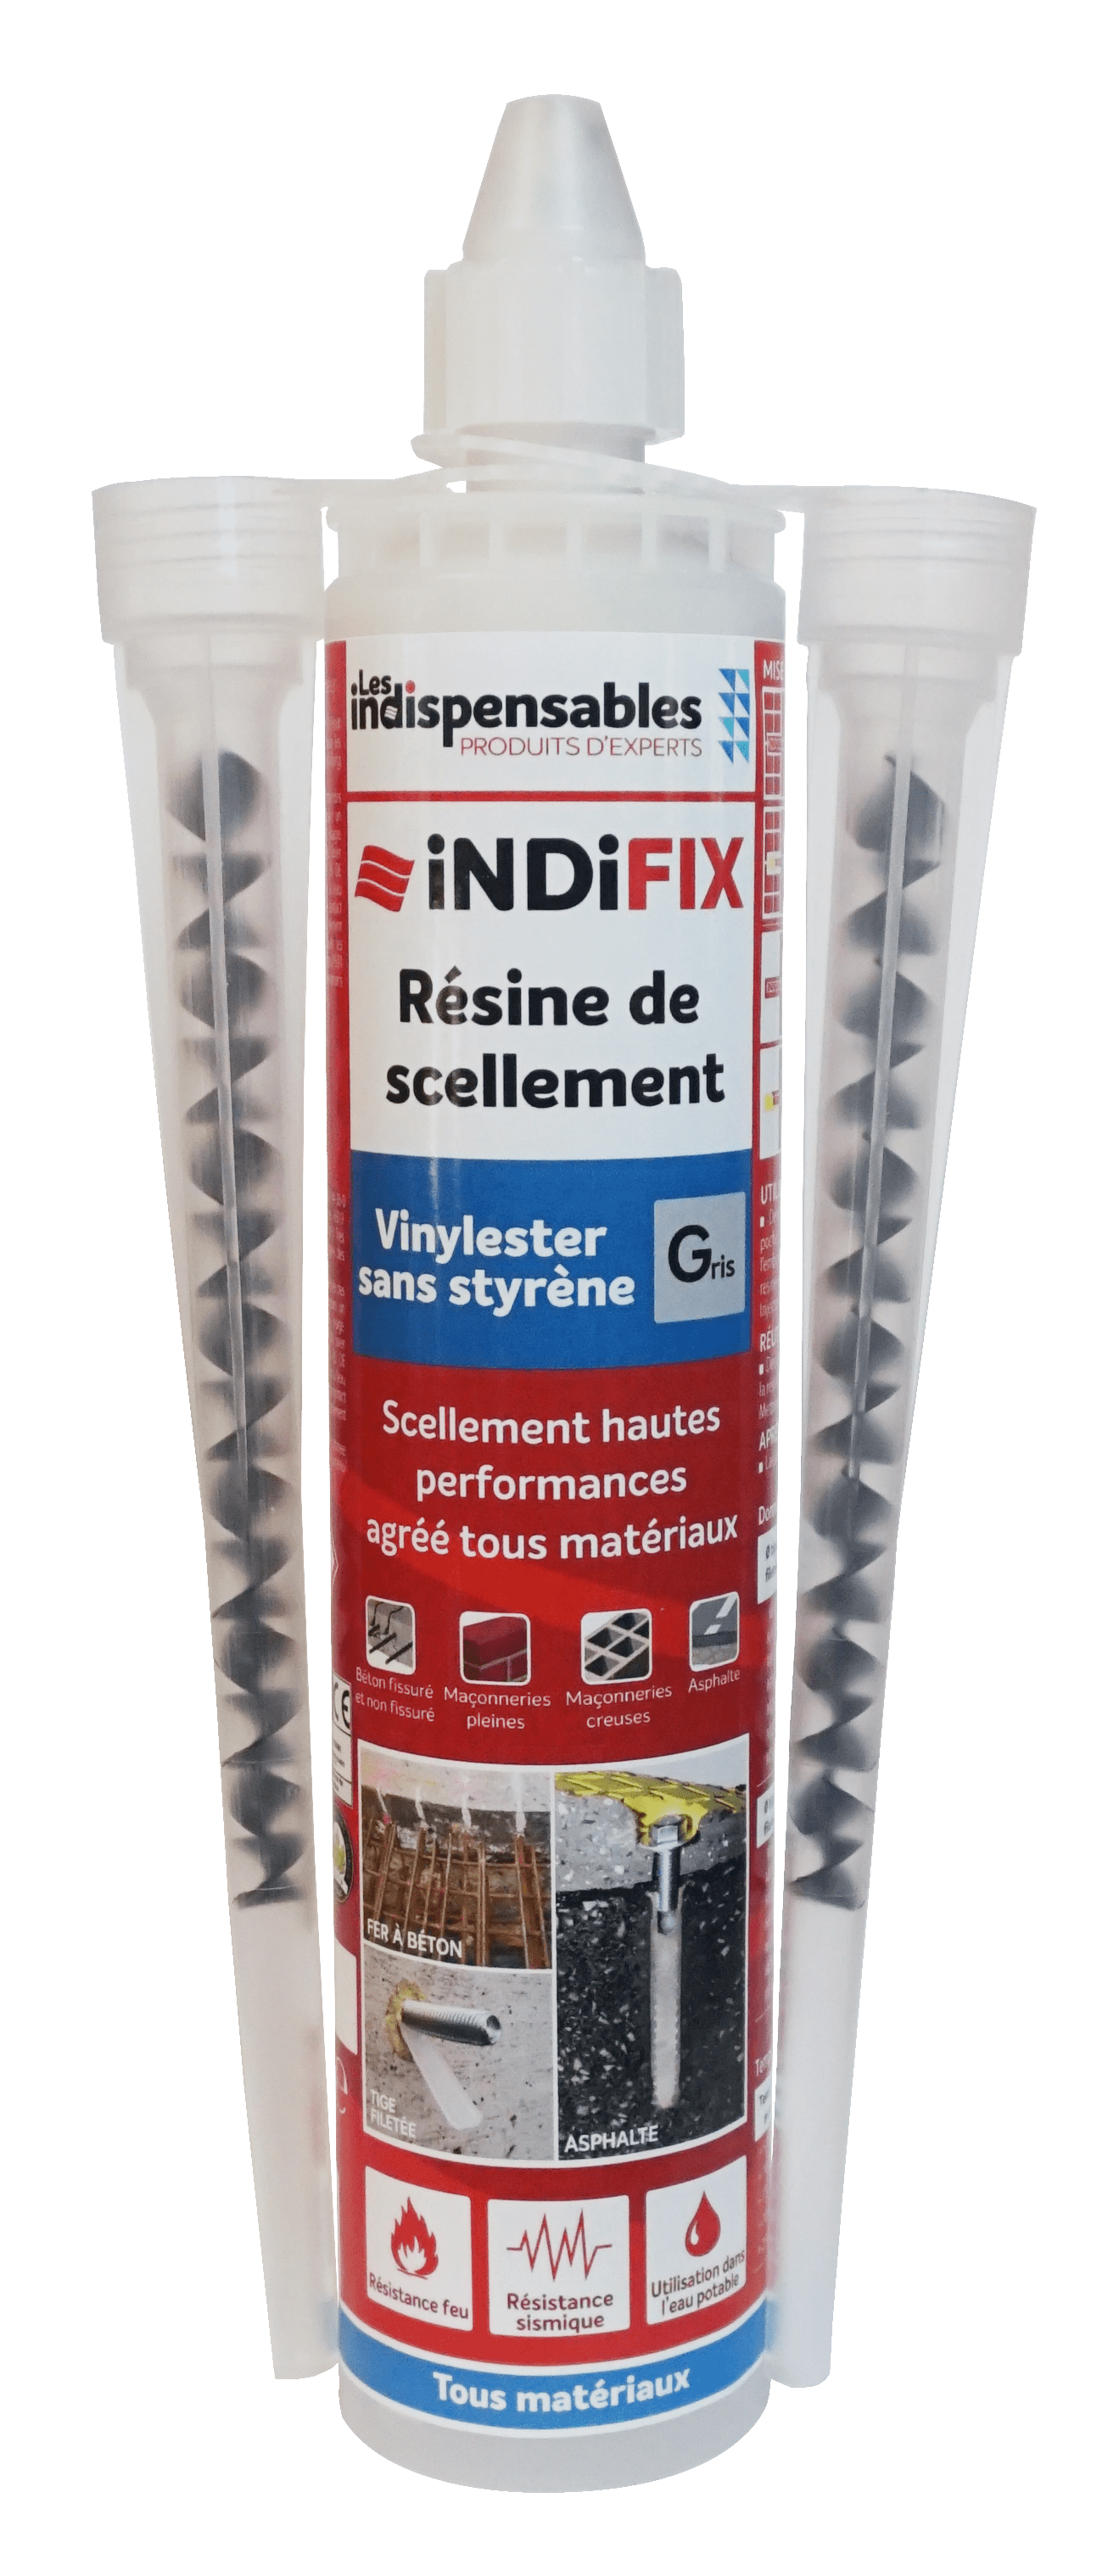 INDIFIX - résine de scellement vinylester - Les indispensables